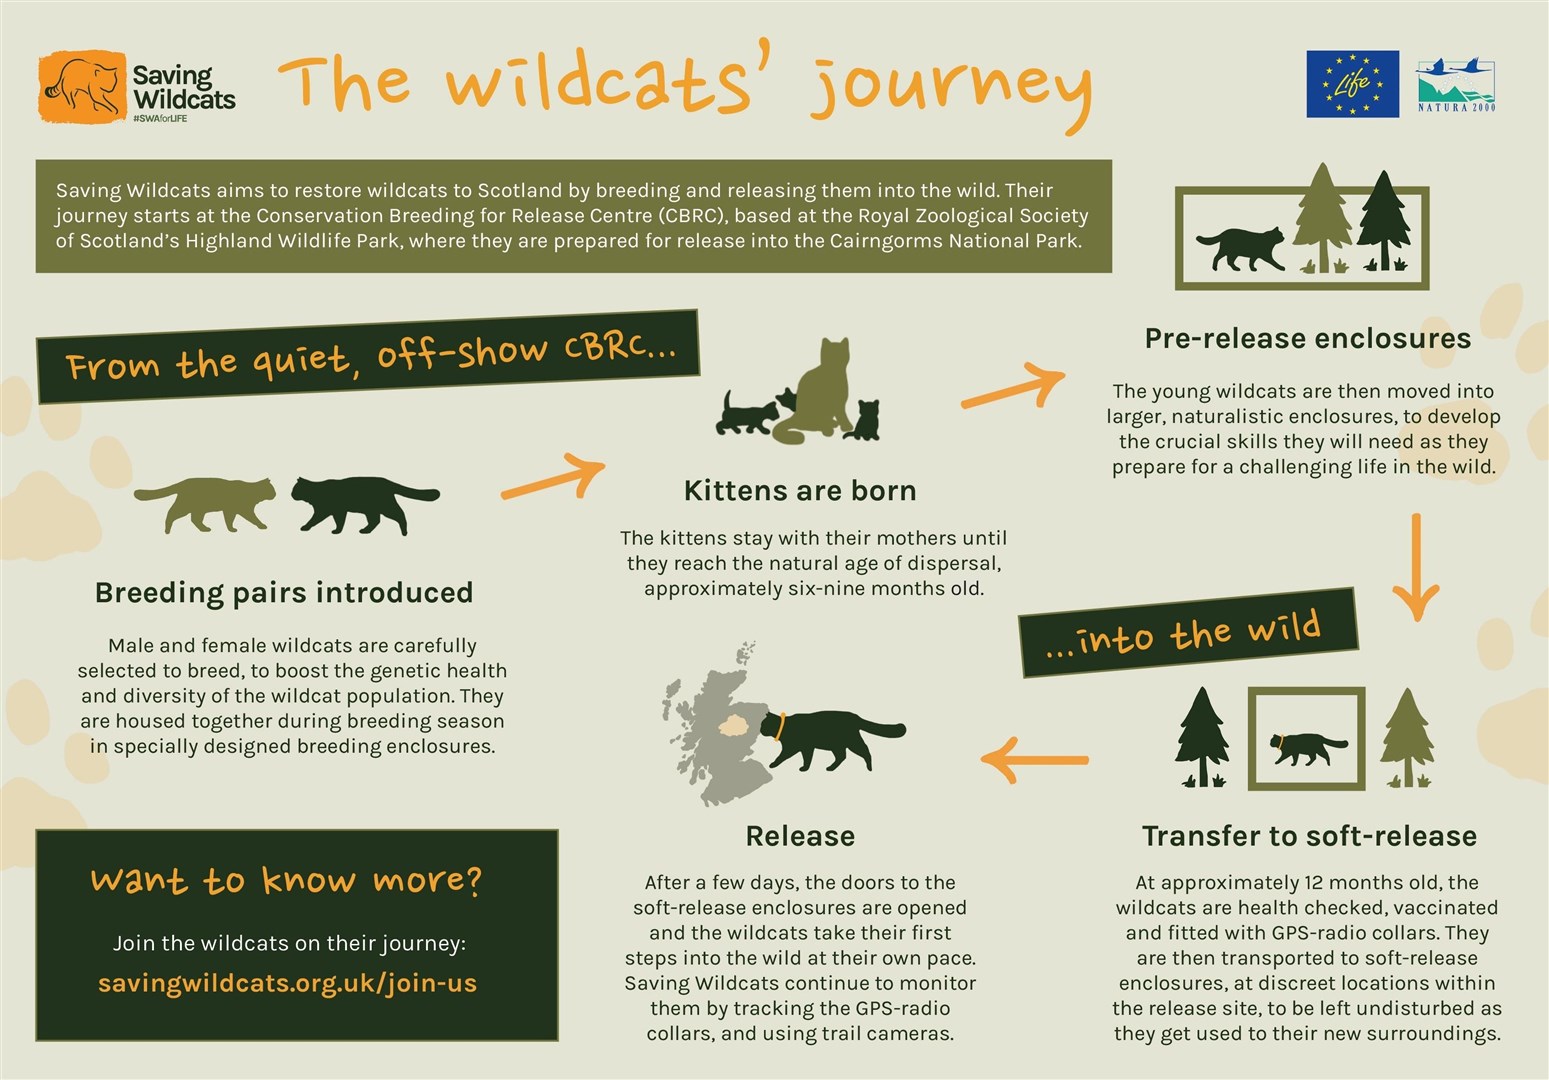 A wildcat's journey (RZSS)